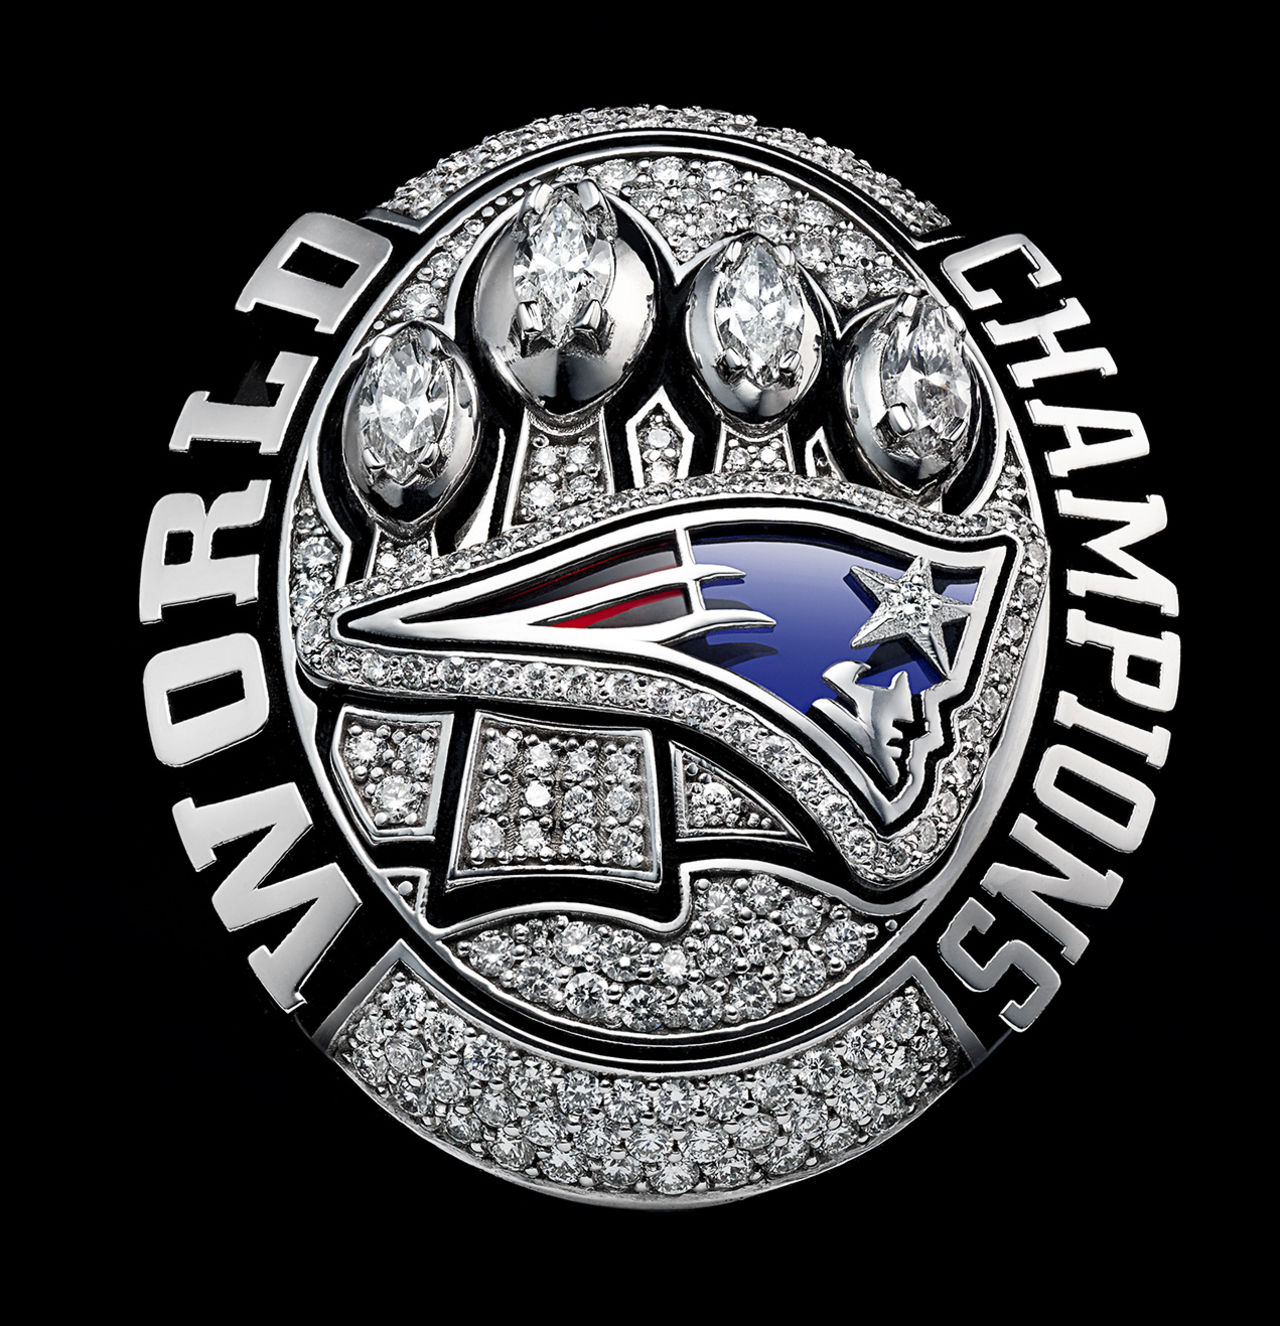 Patriots vs Falcons - Super Bowl 2017 en AS.com1280 x 1326